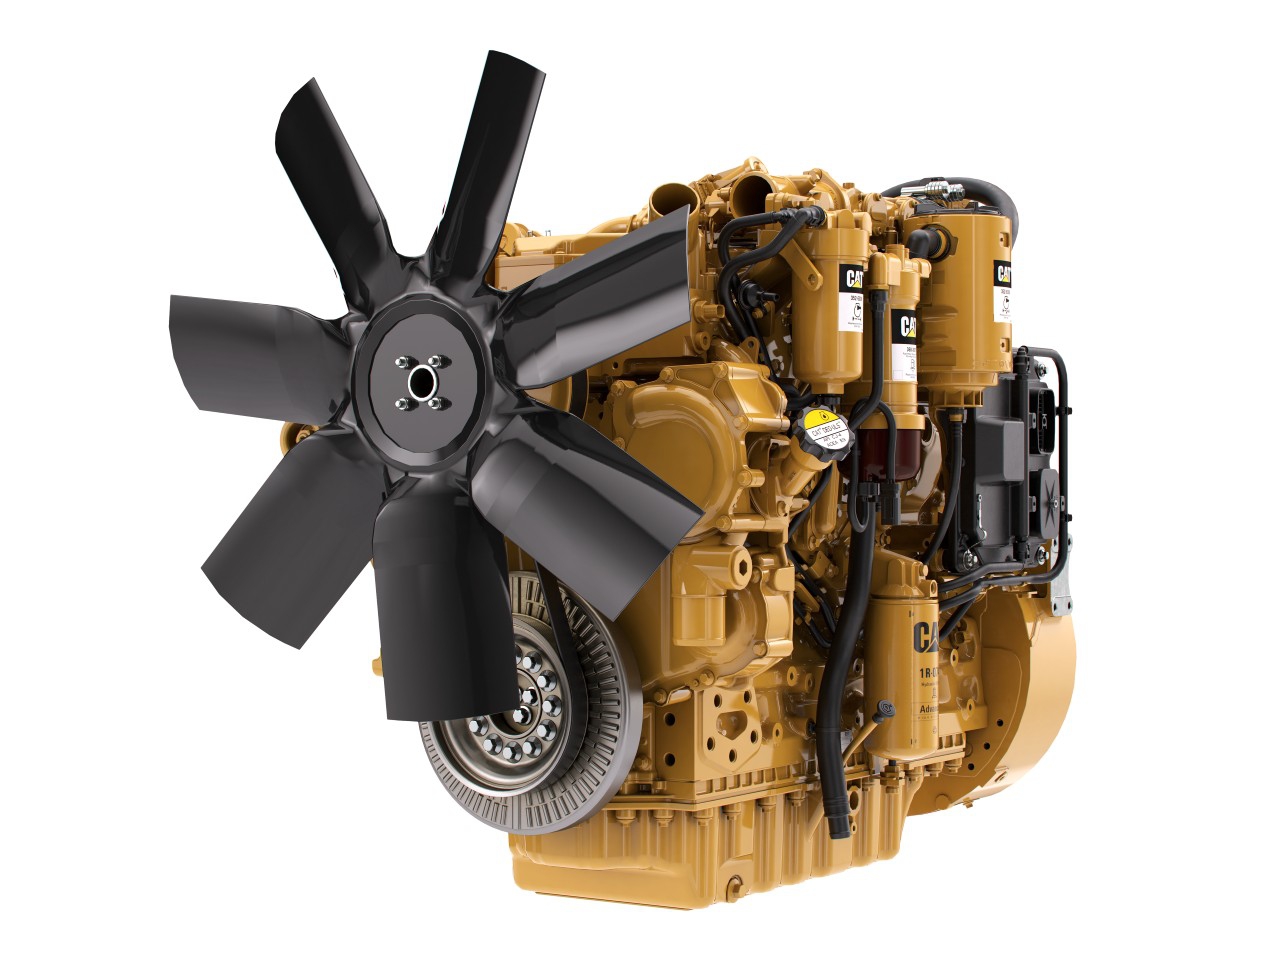 Priemyslený motor Cat C7.1 - 129-239 kW